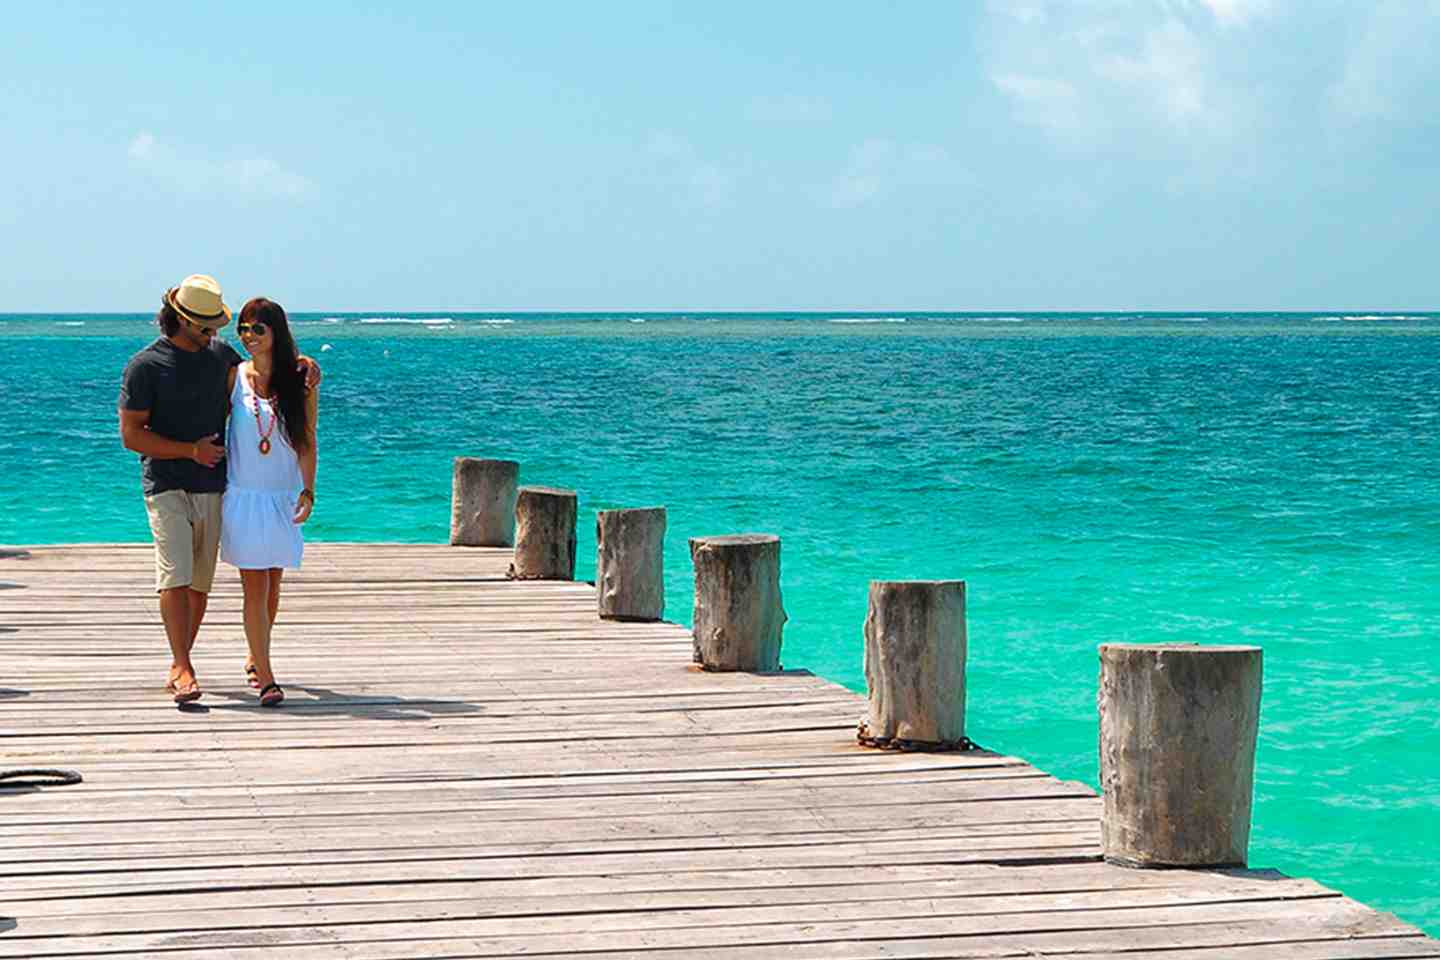 ¿Cuál es la forma más barata de viajar a Cancun?